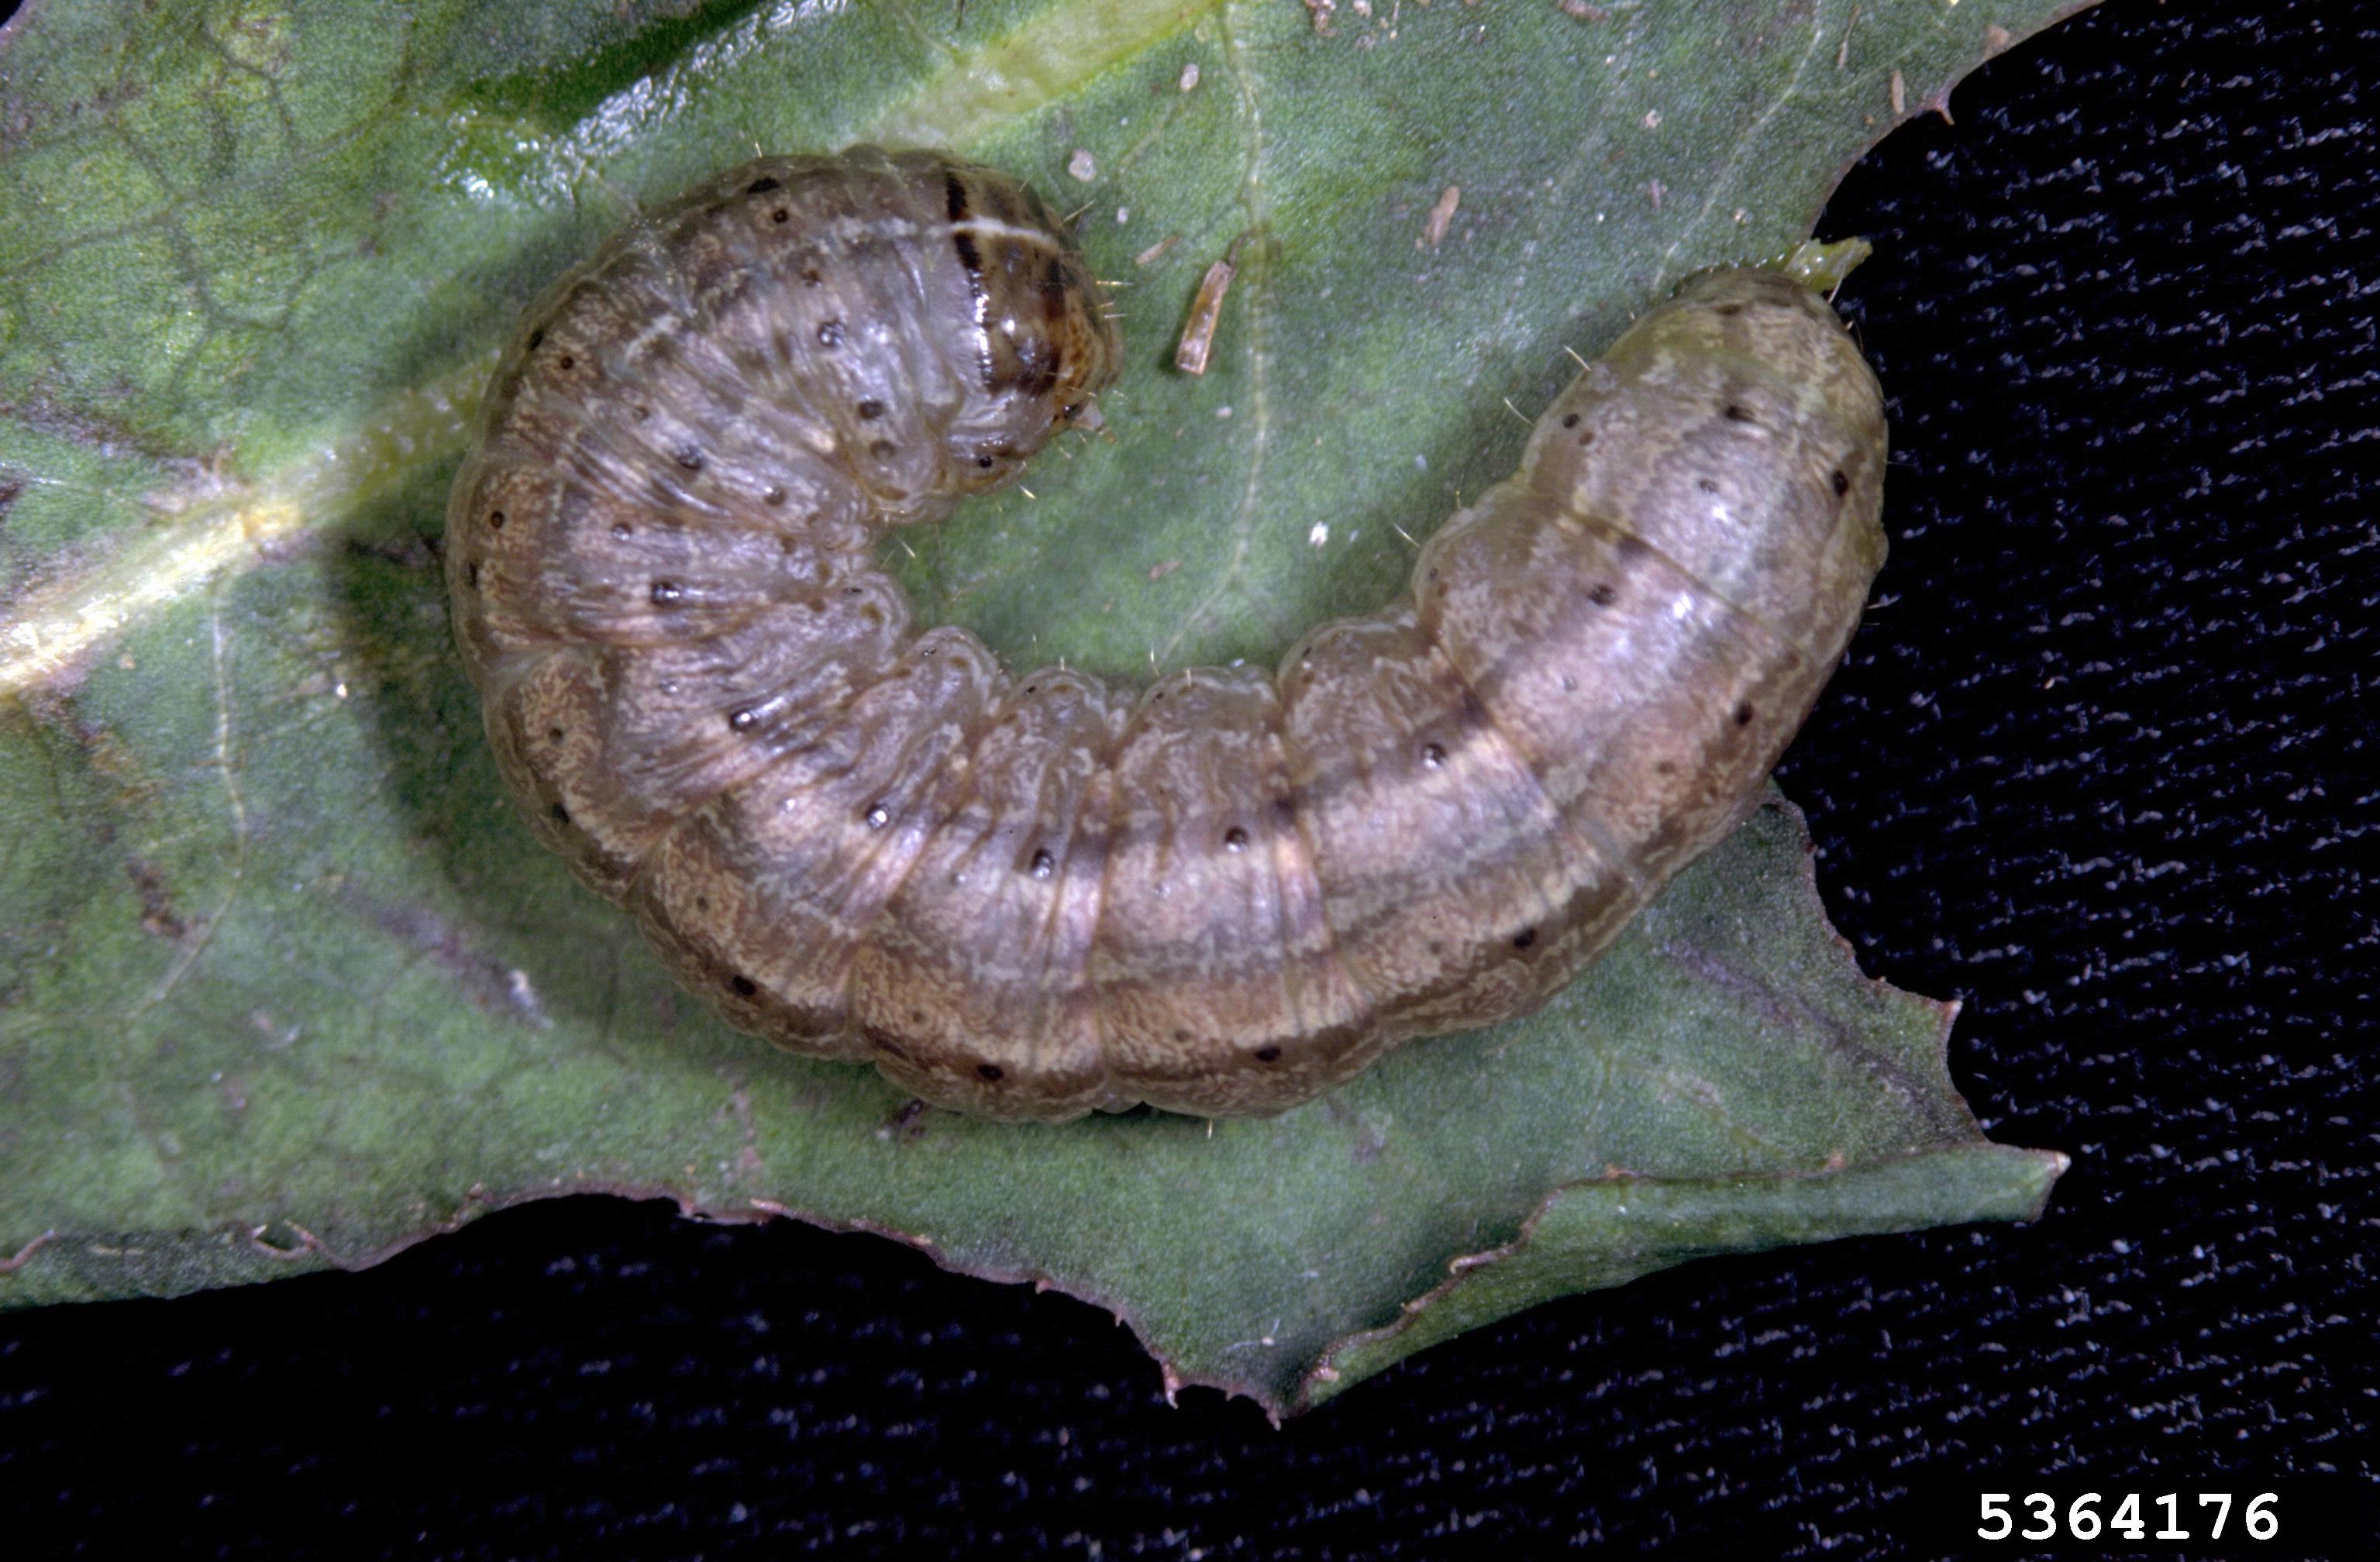 Army Cutworm on a leaf. 